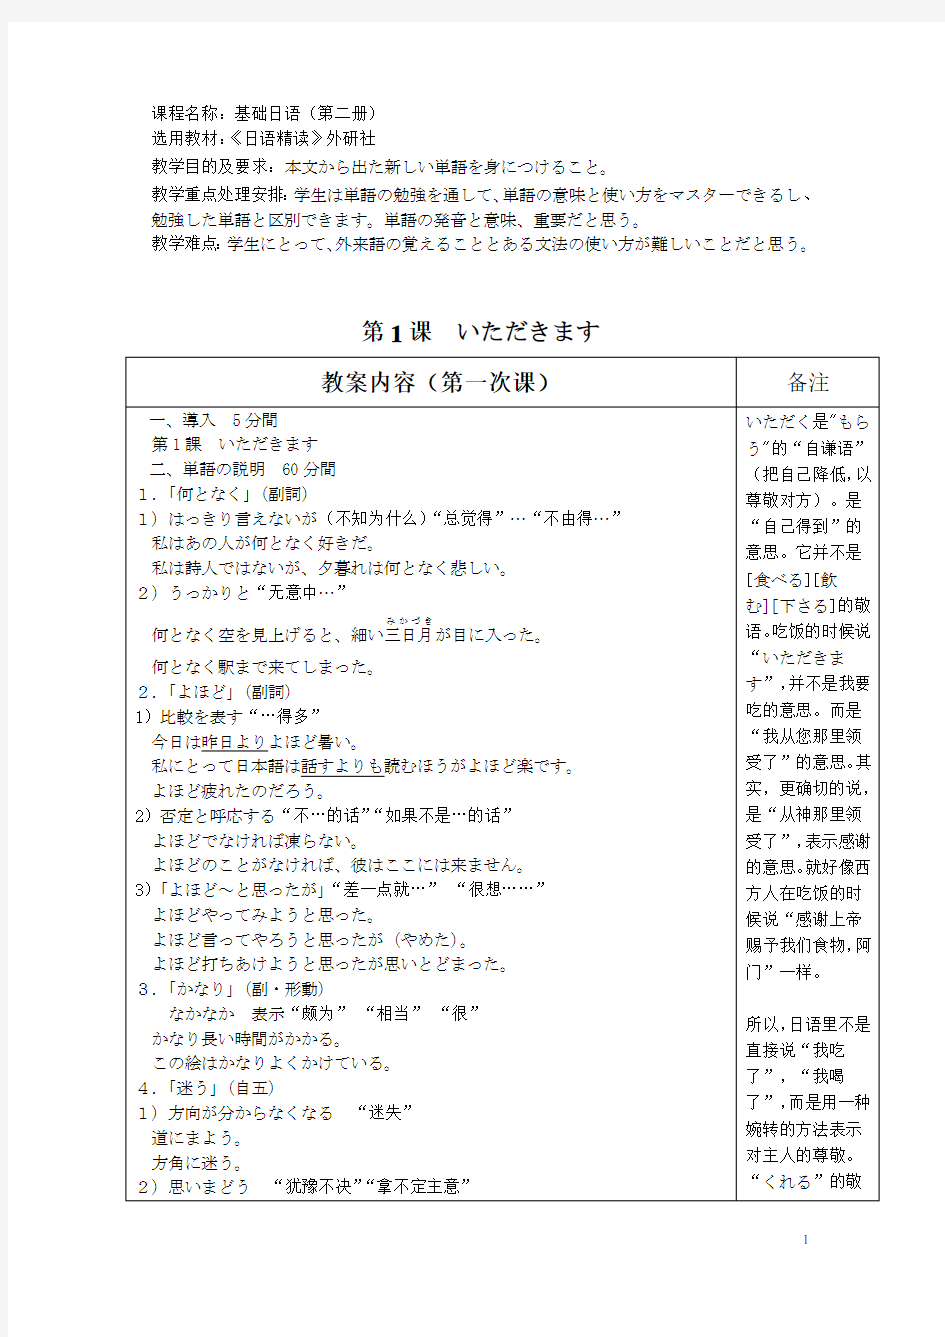 日语精读教案(外研社版)第二册第一课